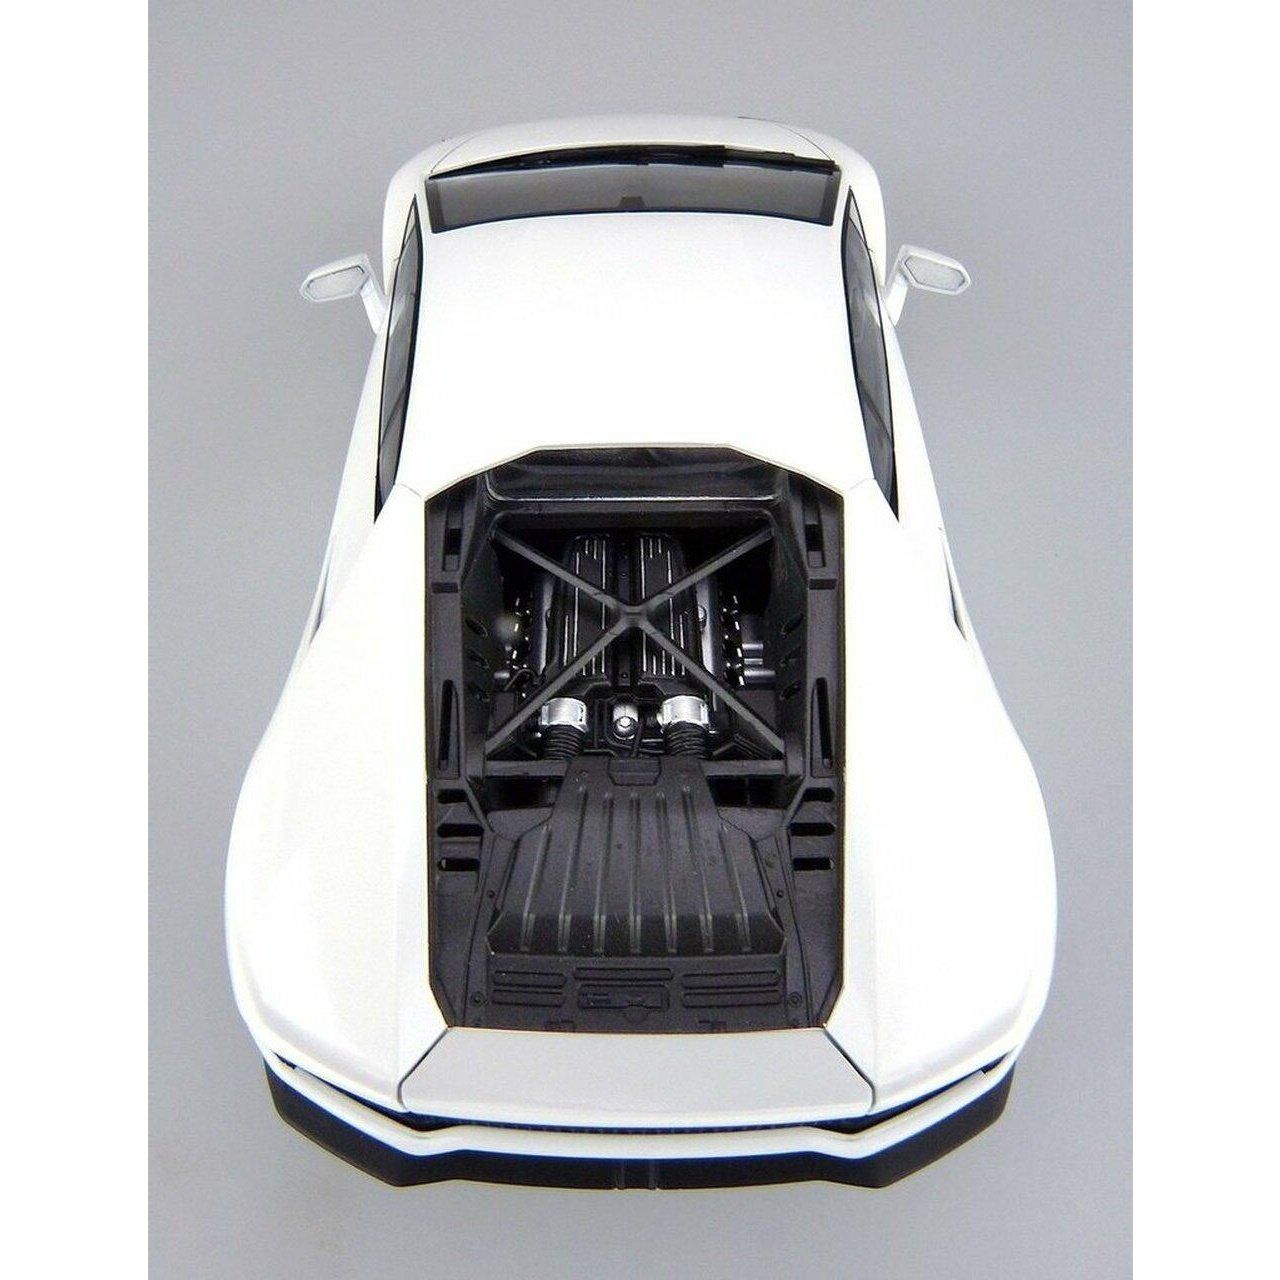 Aoshima 1/24 Super Car 004 林寶堅尼Huracan LP610-4 組裝模型 - TwinnerModel